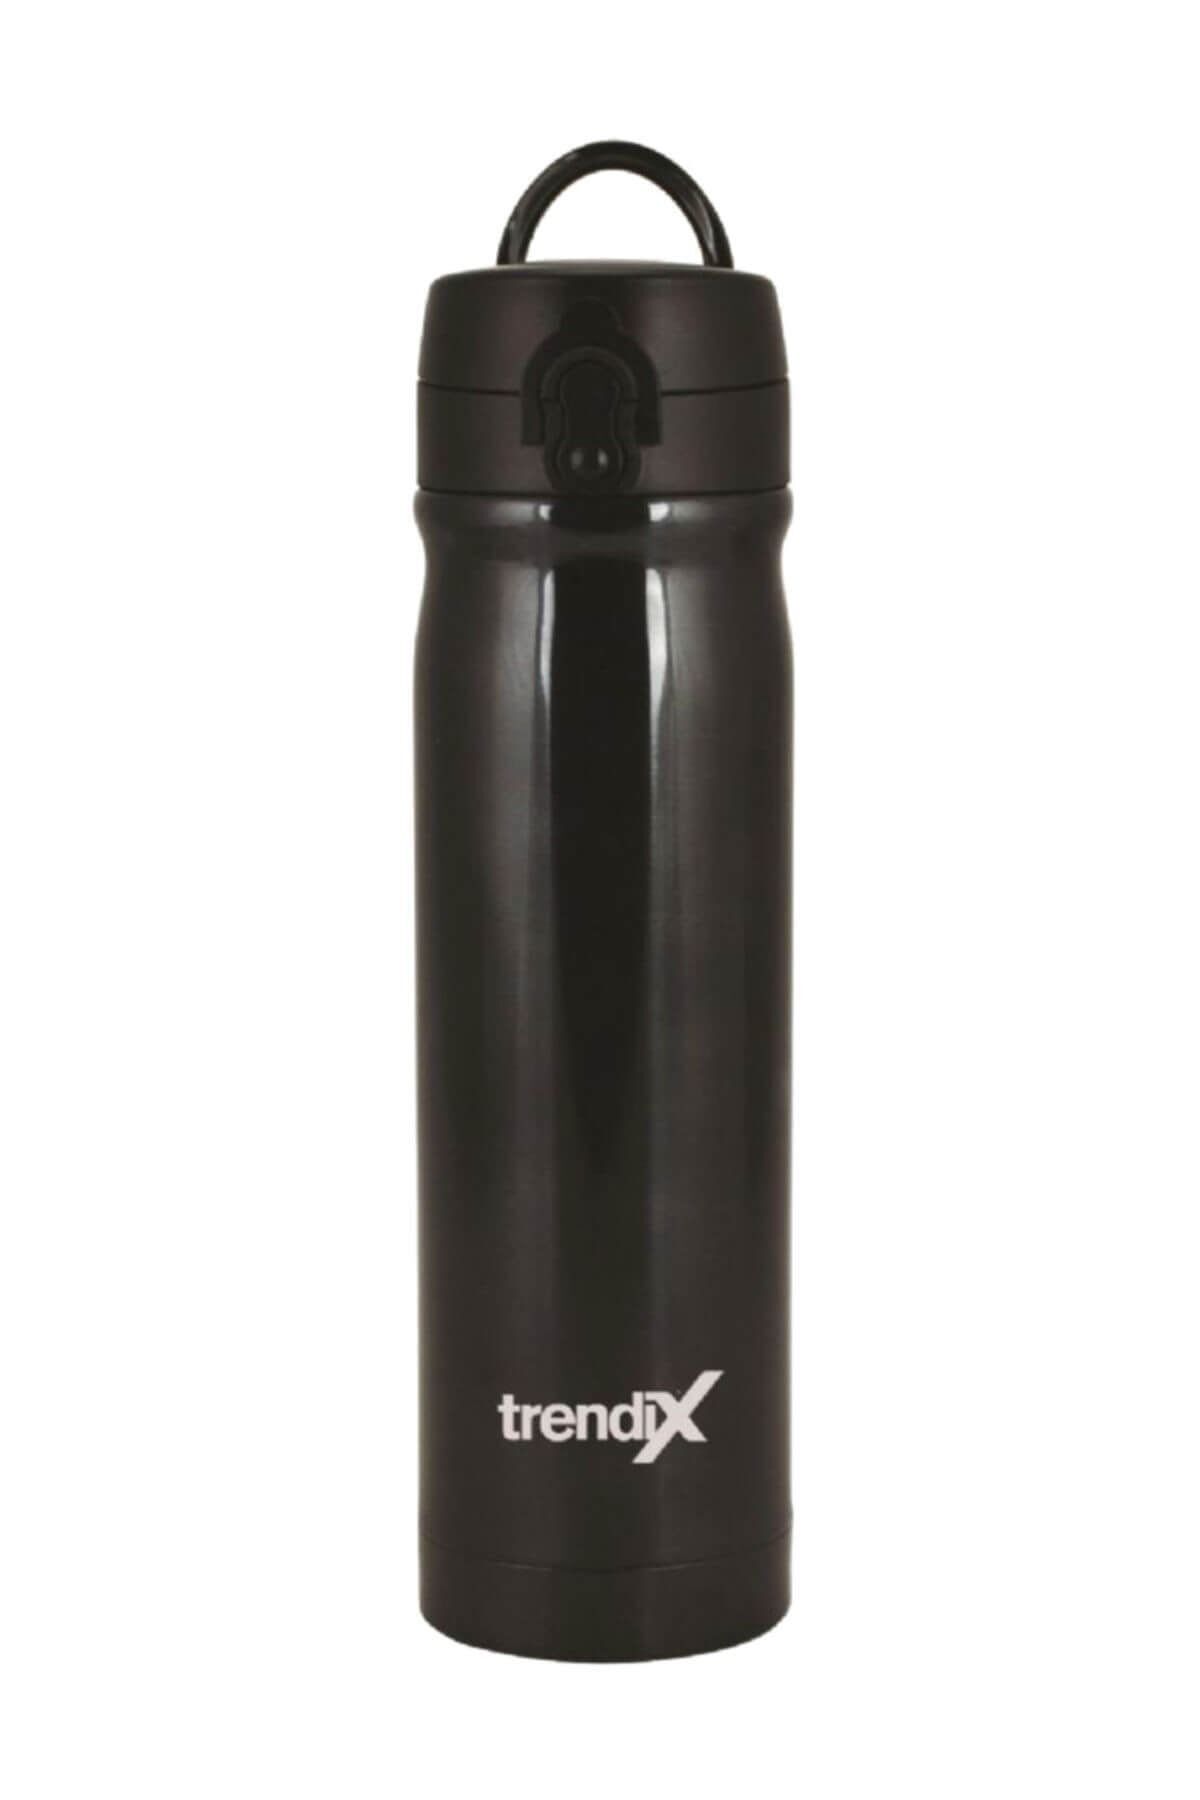 Trendix Umix Çelik Termos 500 Ml. Siyah U5000-si